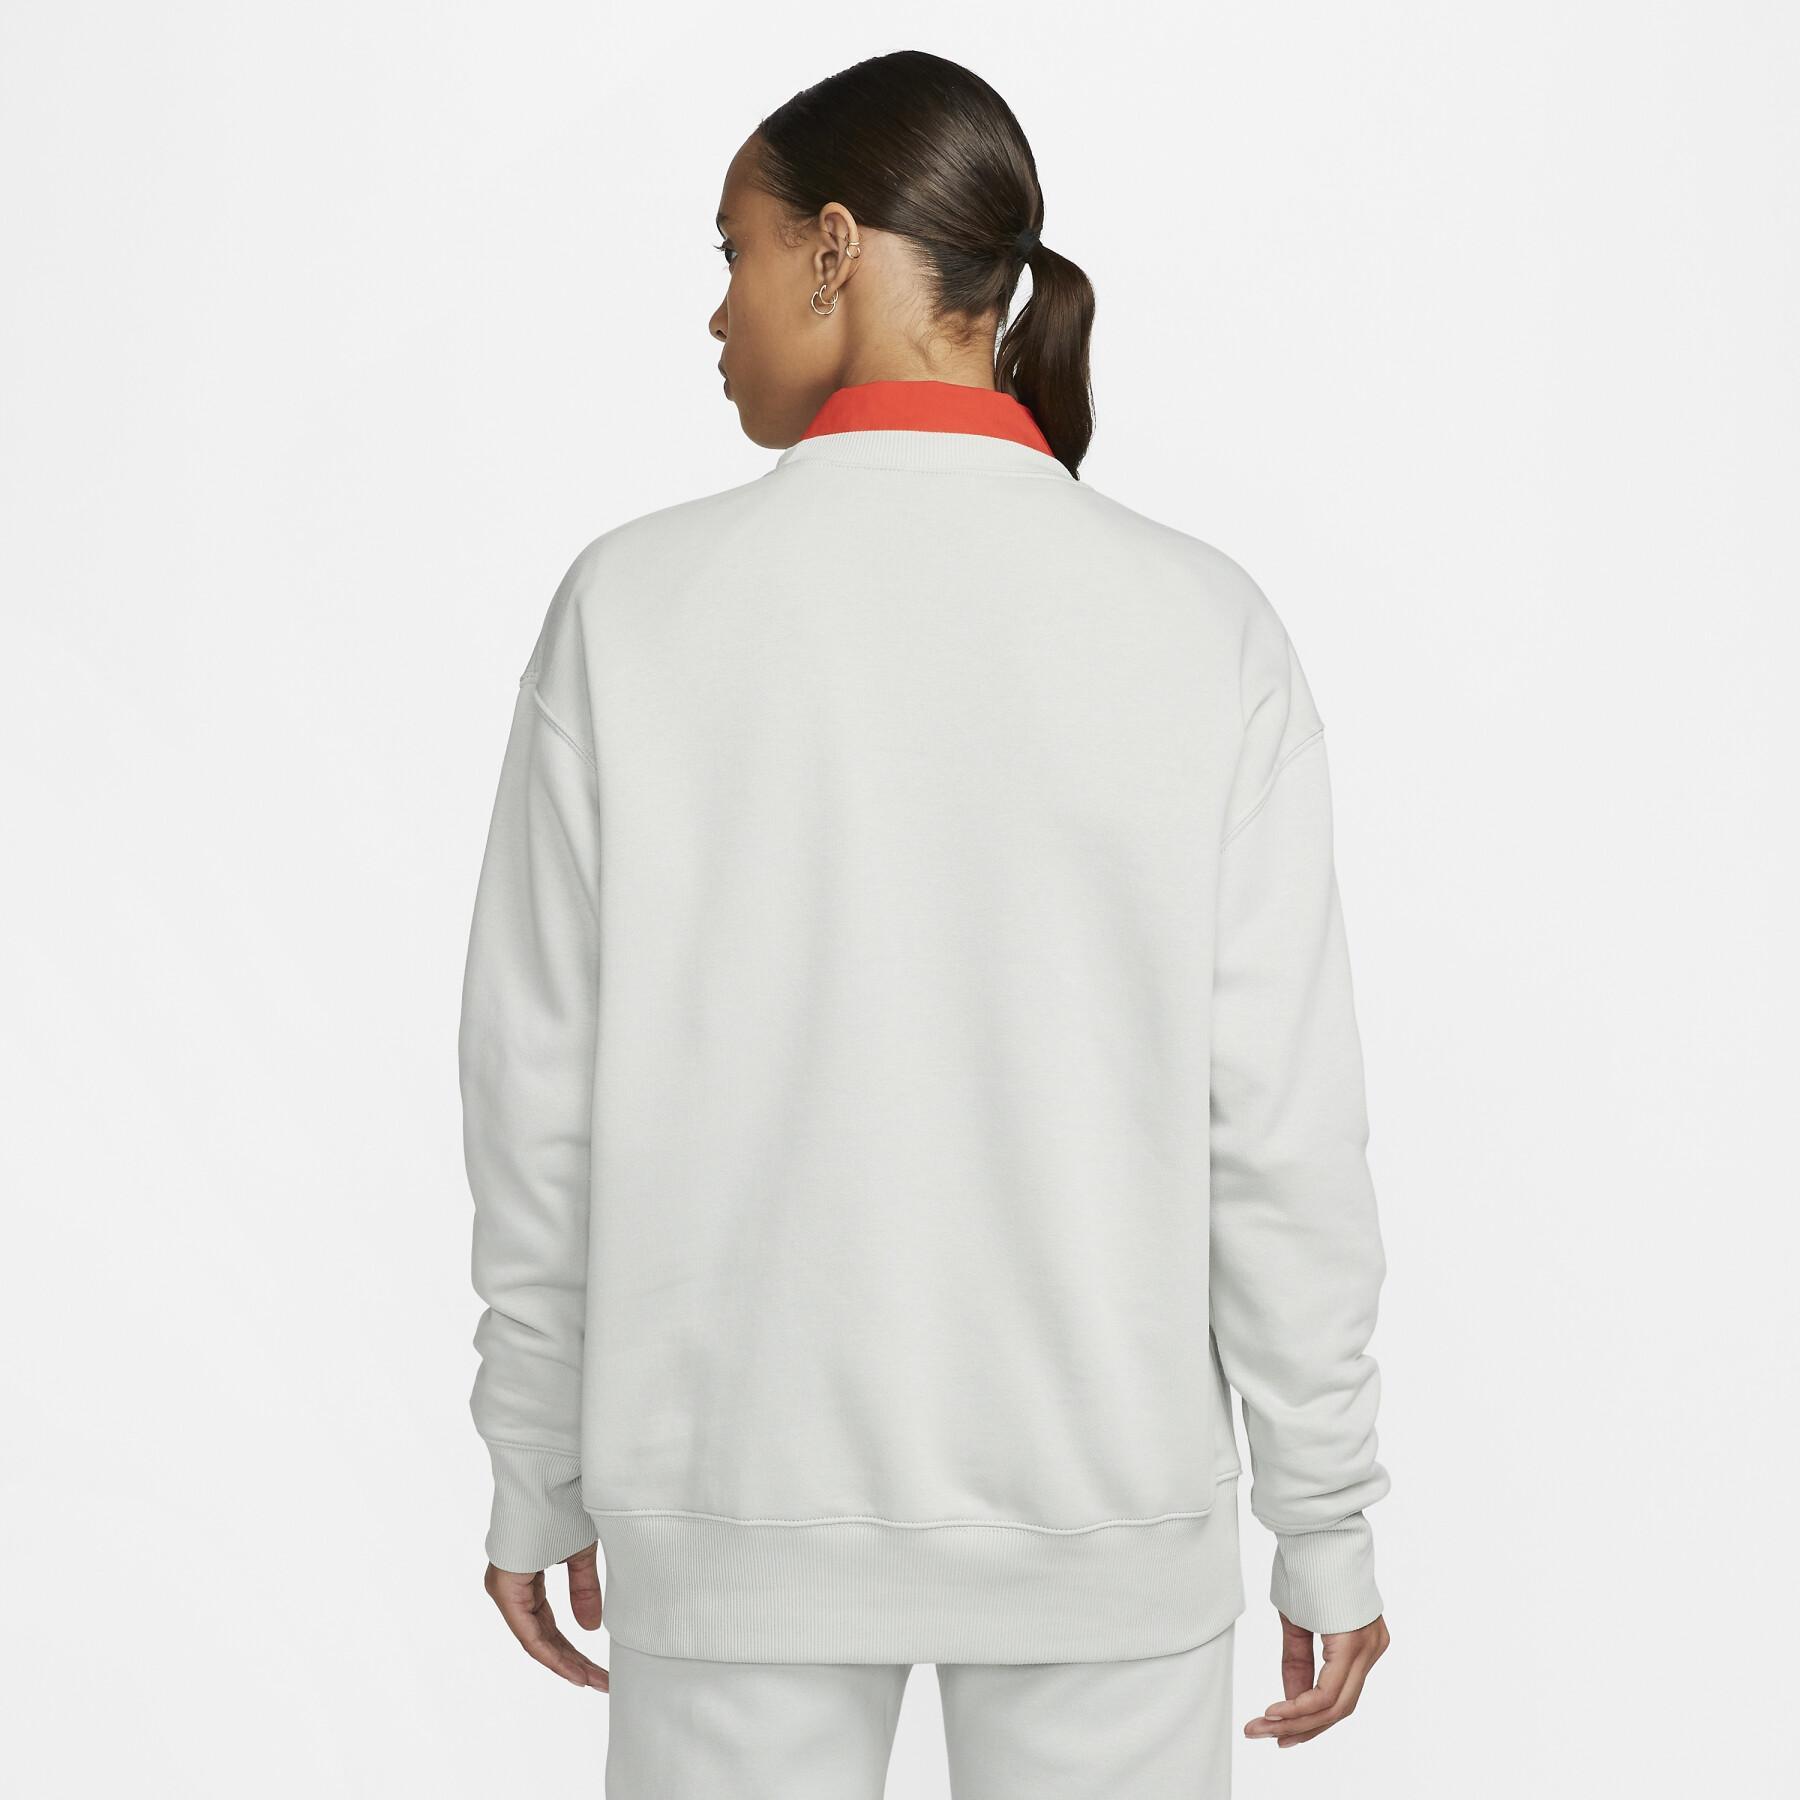 Sweatshirt Frau Nike Fleece OS MS